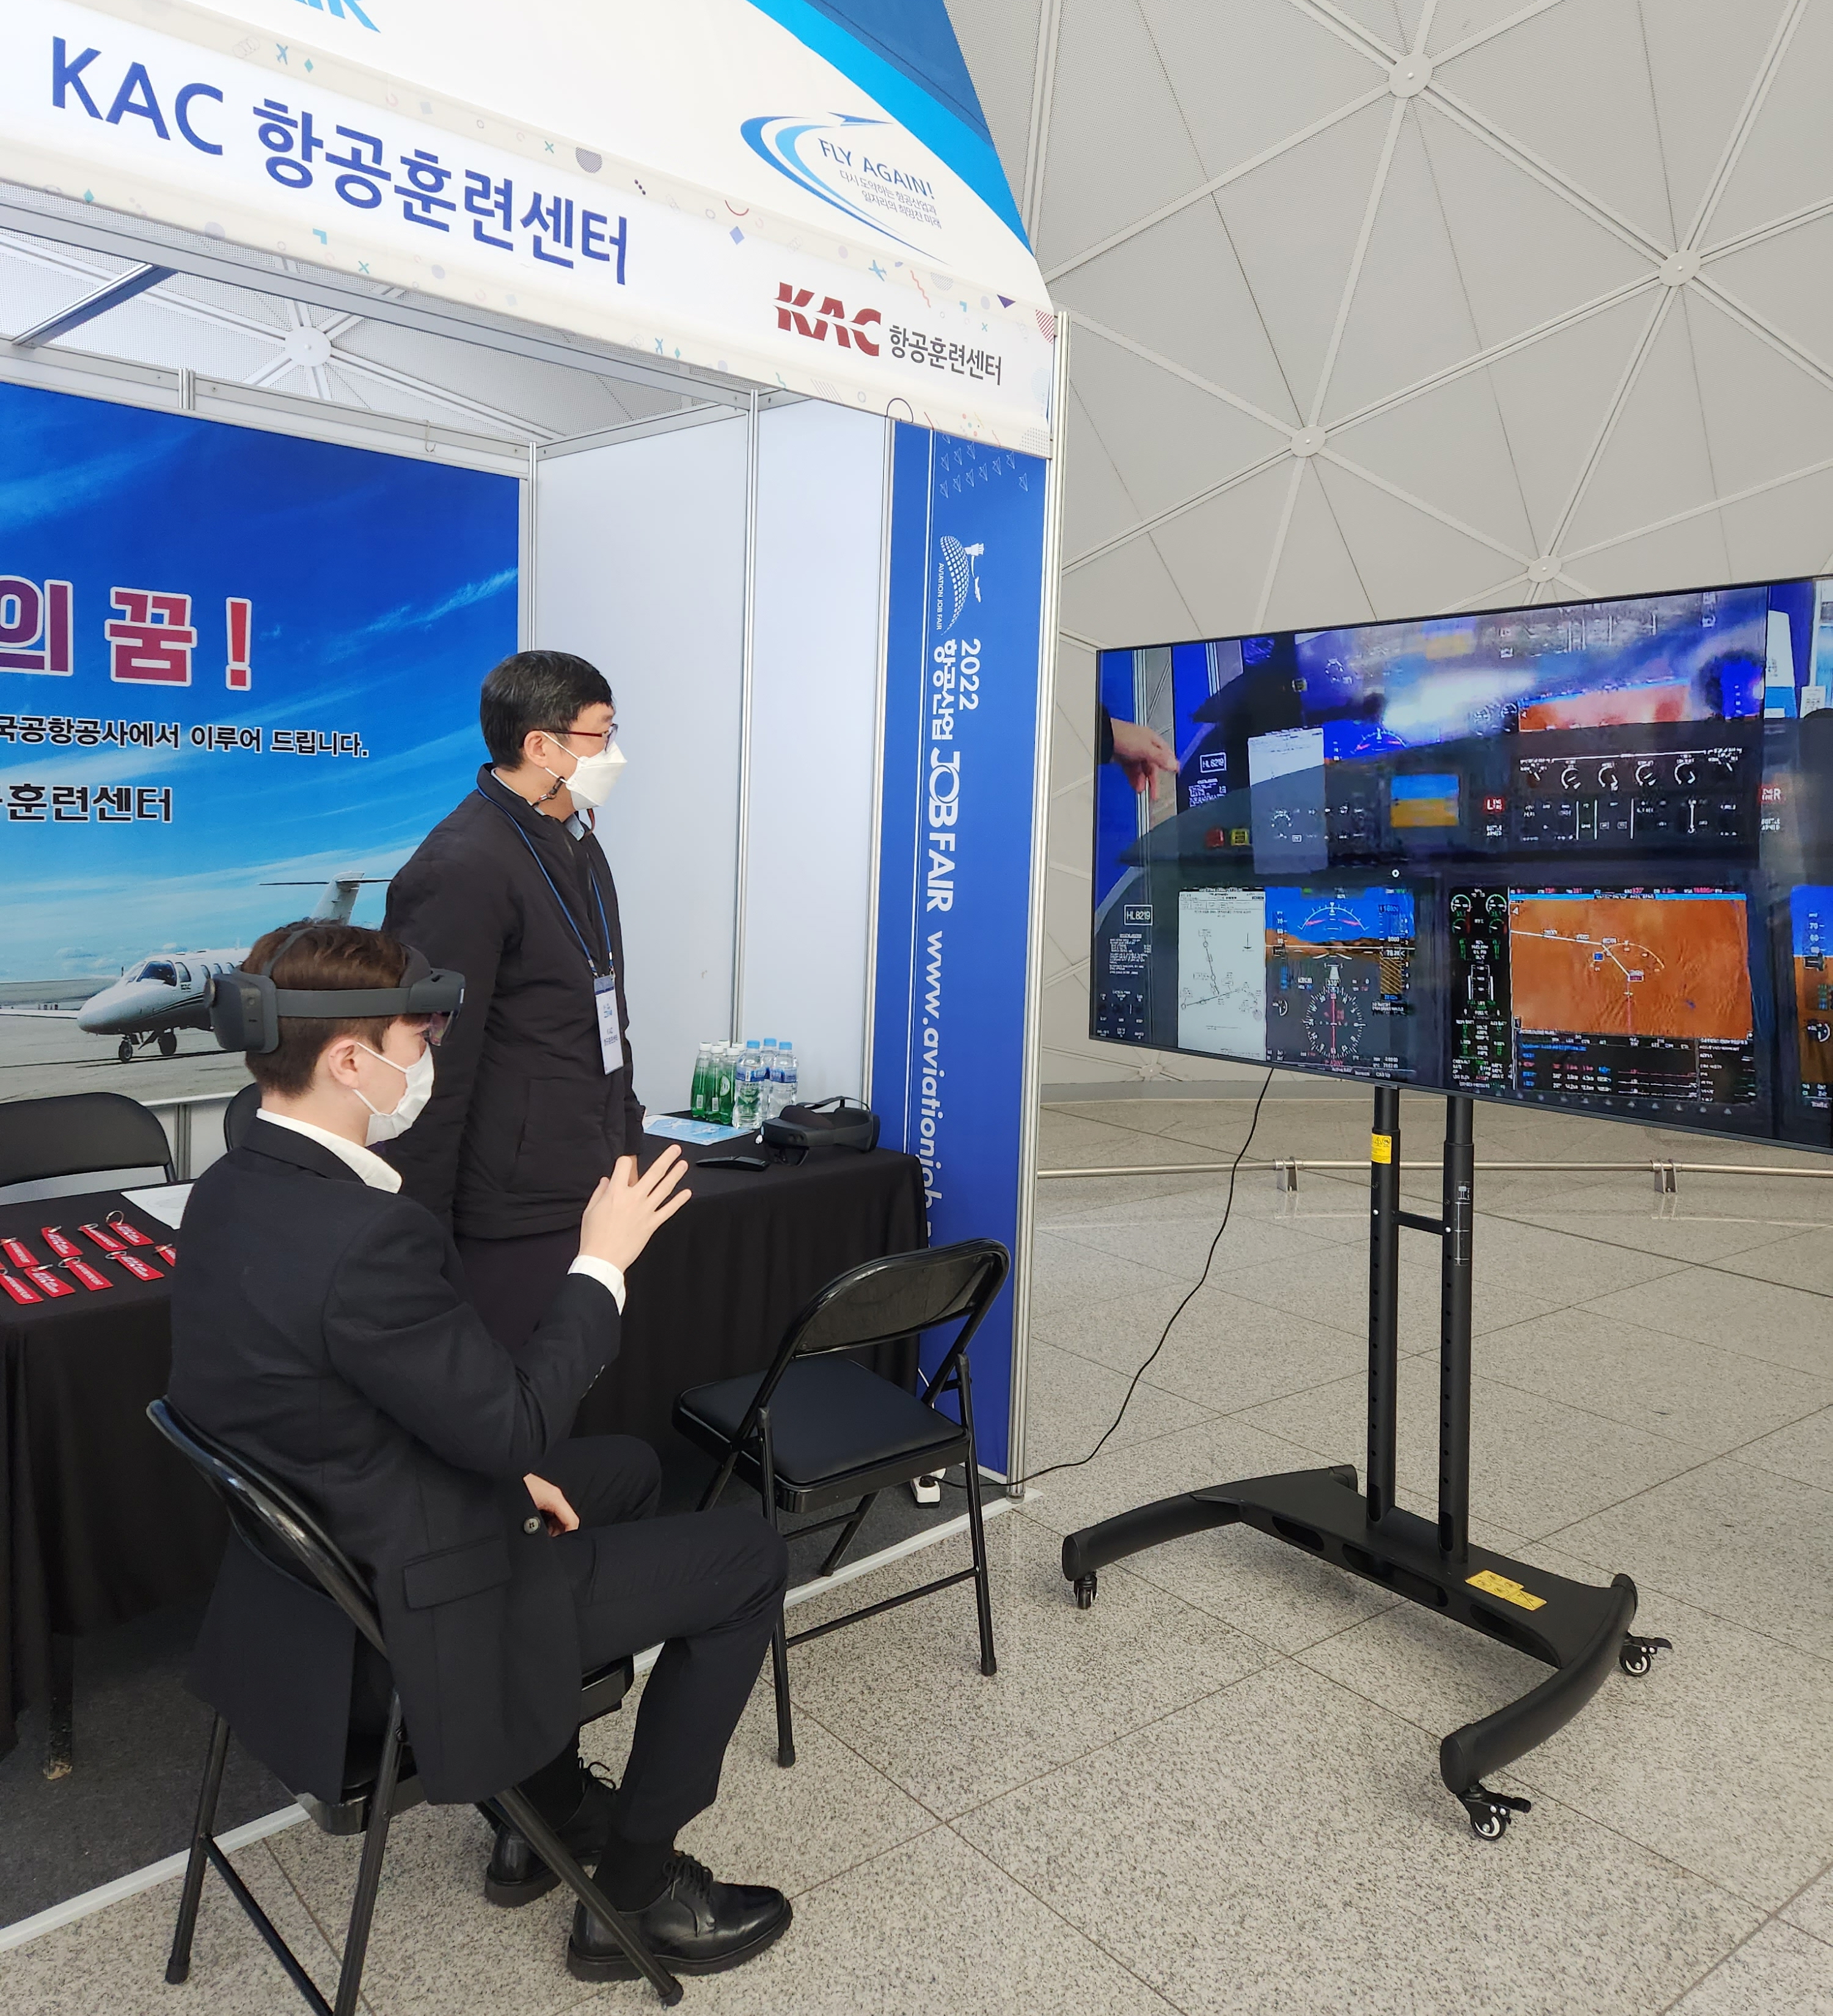 27일 인천공항 제1여객터미널 교통센터에서 열린 ‘2022 항공산업 잡 페어’의 한국항공공사(KAC)항공훈련센터 홍보부스에서 참가자가 제트항공기 조종석 가상체험을 하고 있다. 한국공항공사 제공  